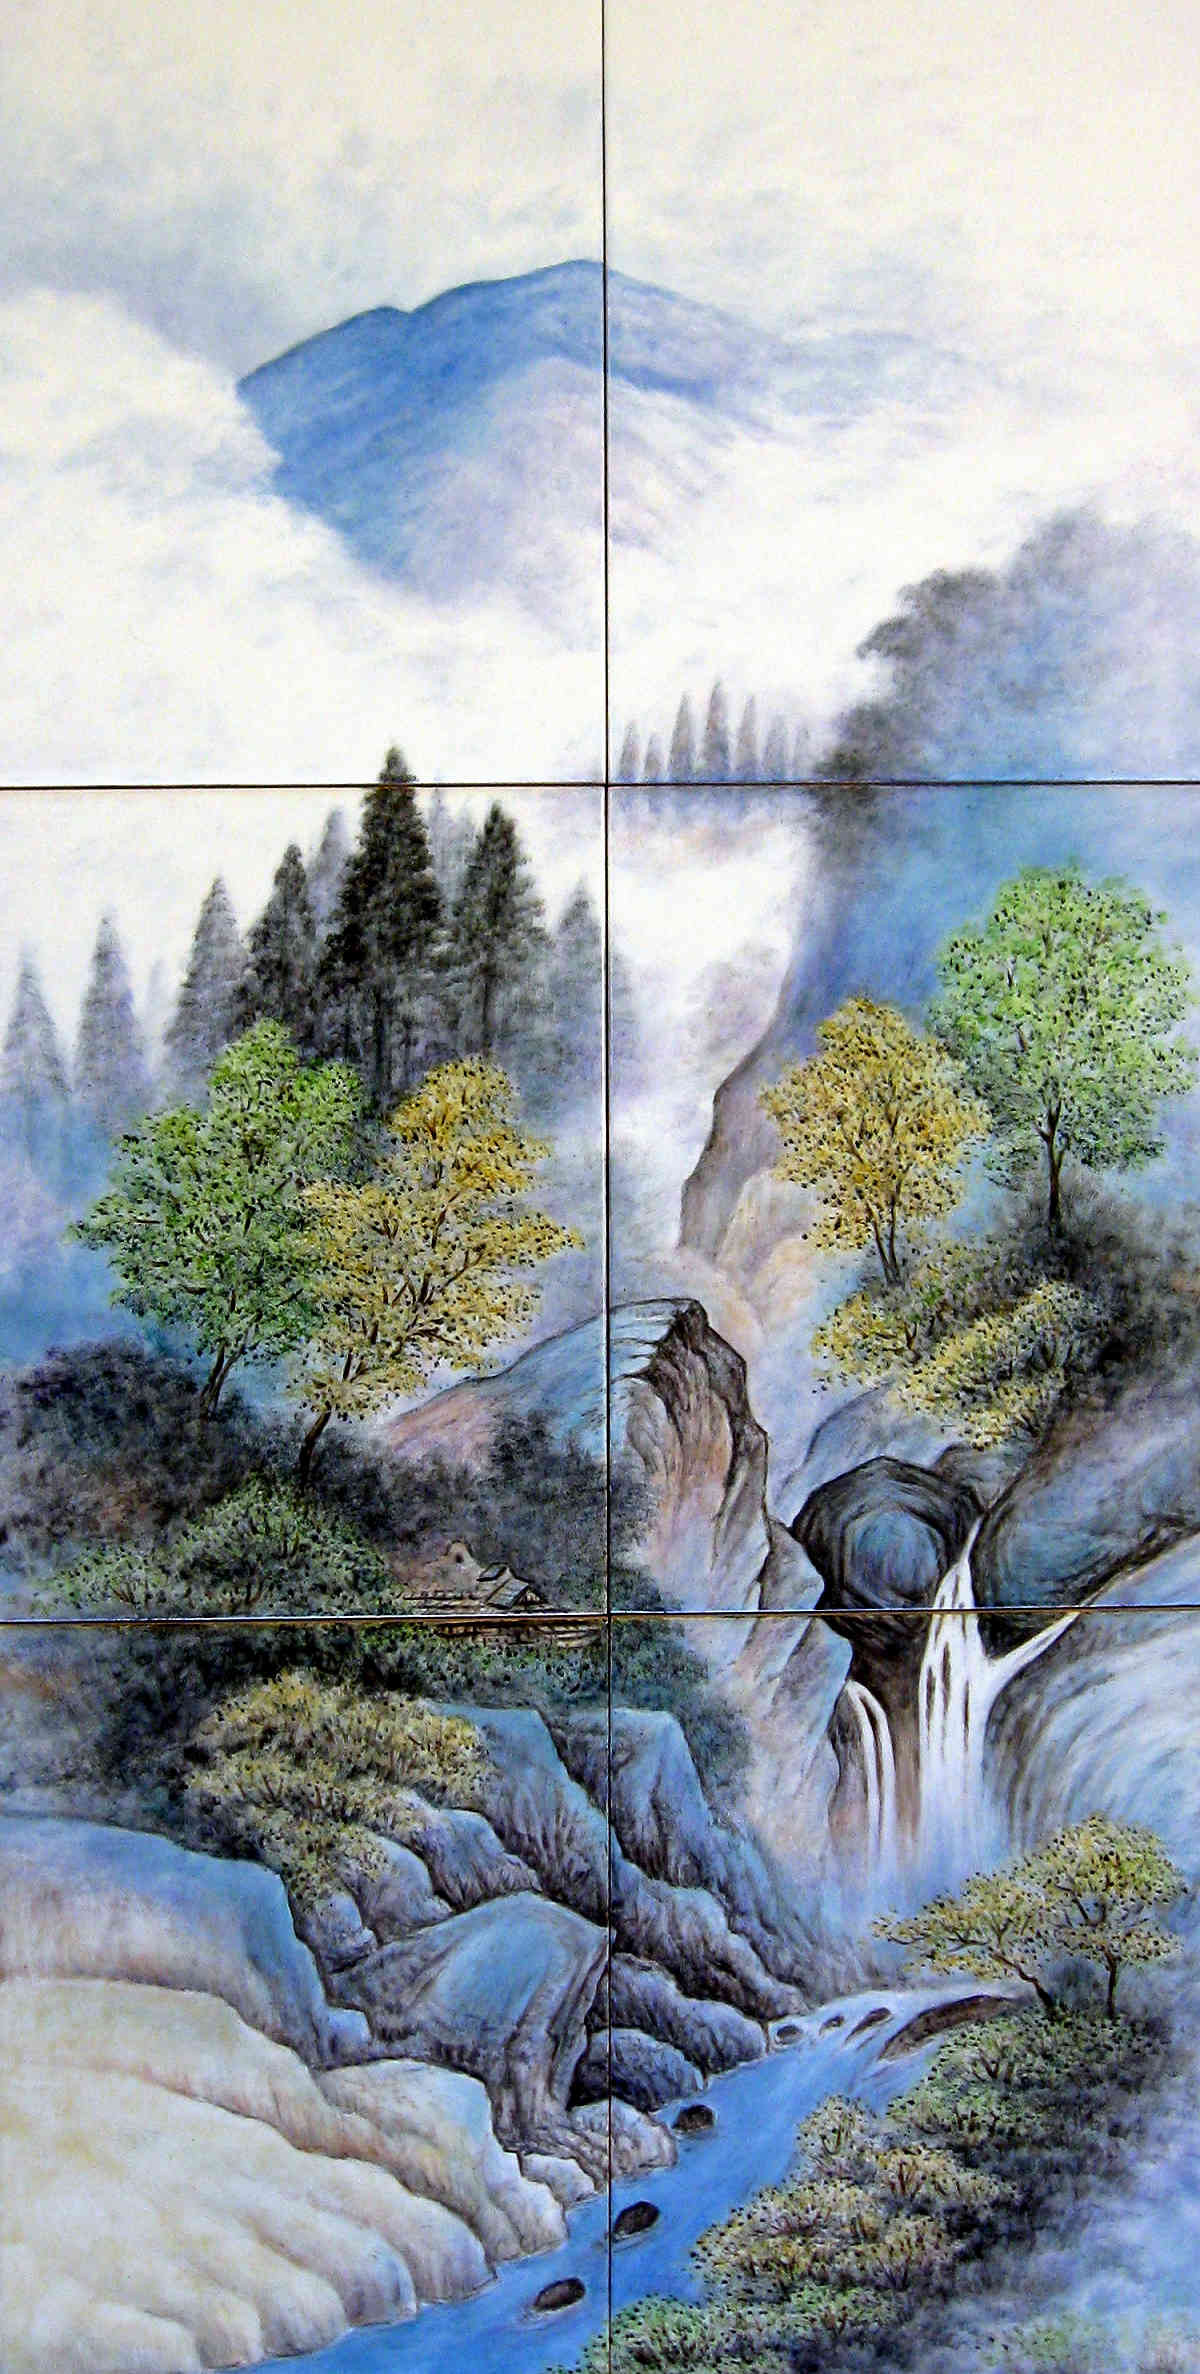 Japan Landscape Paintings
 Sansui Ga Landscape Painting Japanese bath decor tile mural